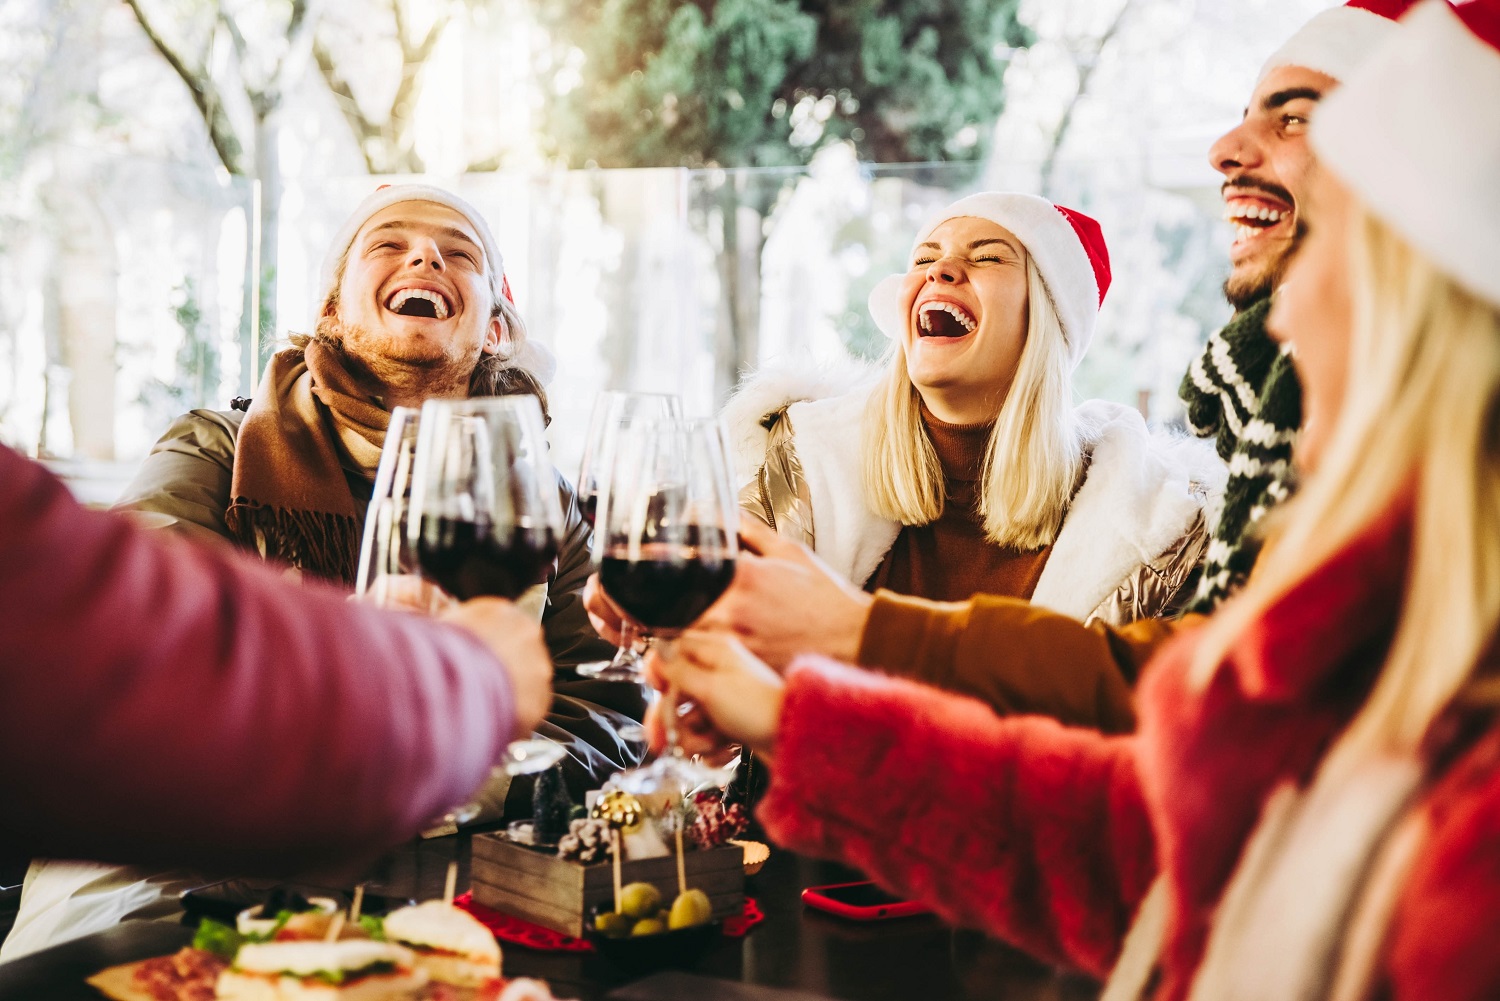 La hostelería de la Comunidad de Madrid concluye su campaña de Navidad con una valoración ‘sobresaliente’ por parte del 65,5% de los clientes - La Viña